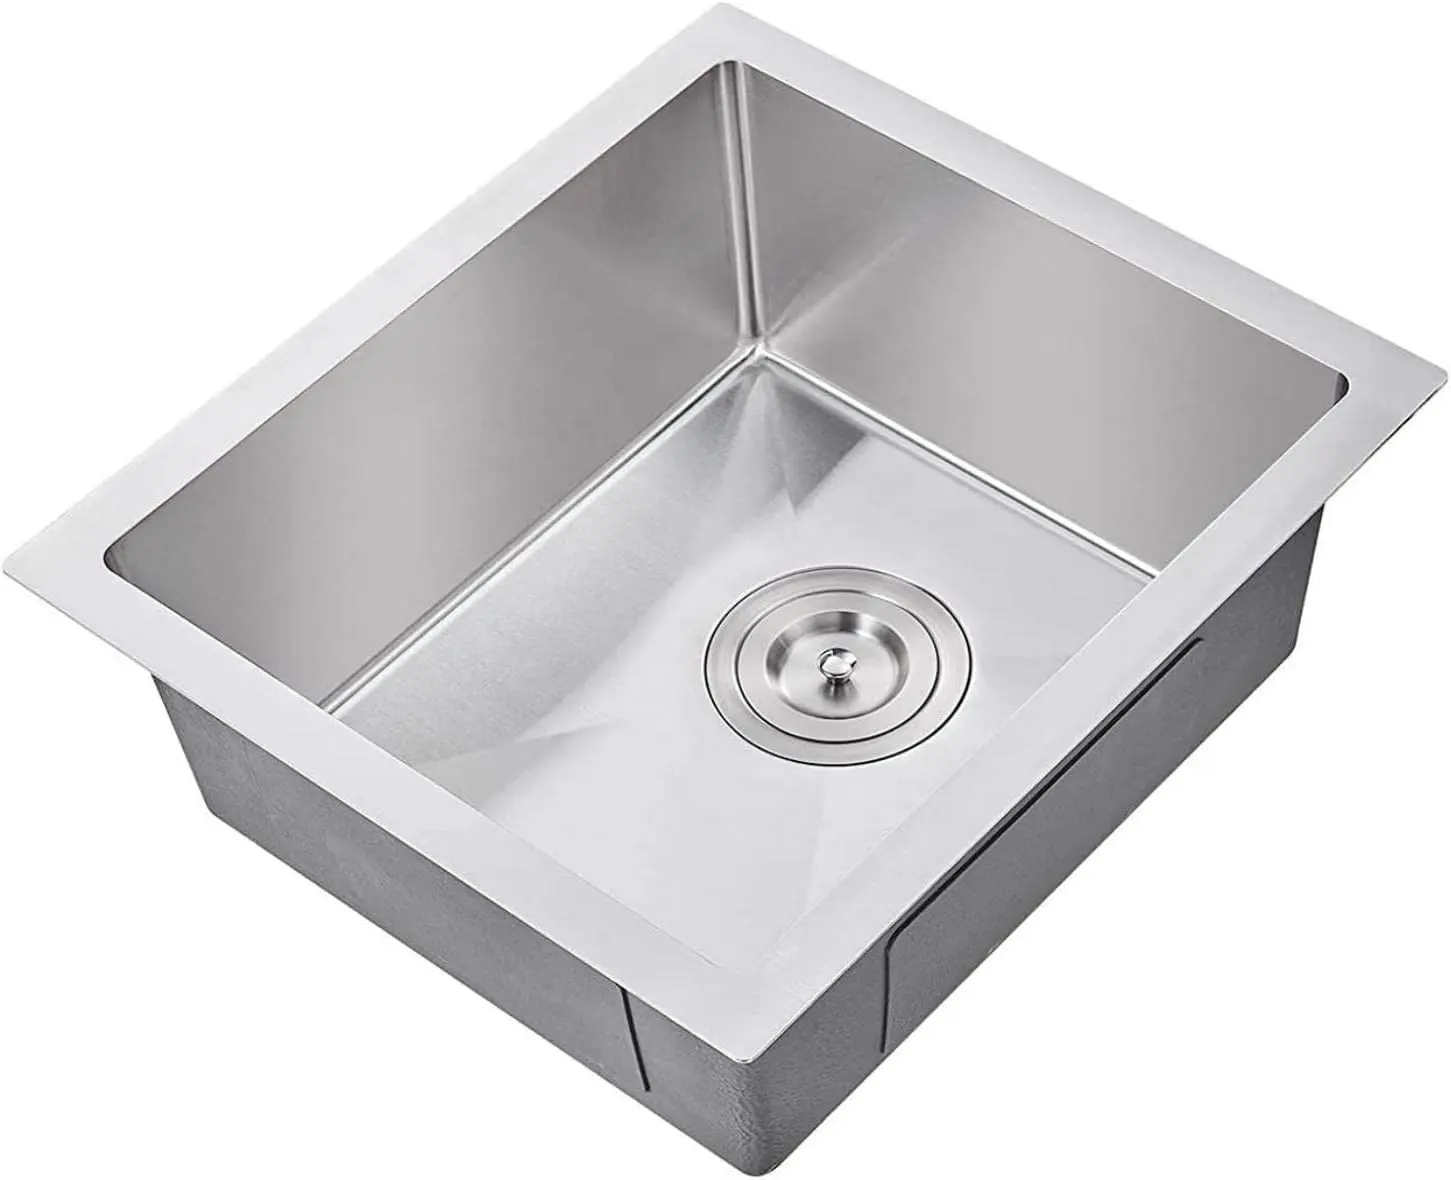 Home Kitchen R10 Stainless Steel Handmade Undermount Single Bowl Kitchen Sink